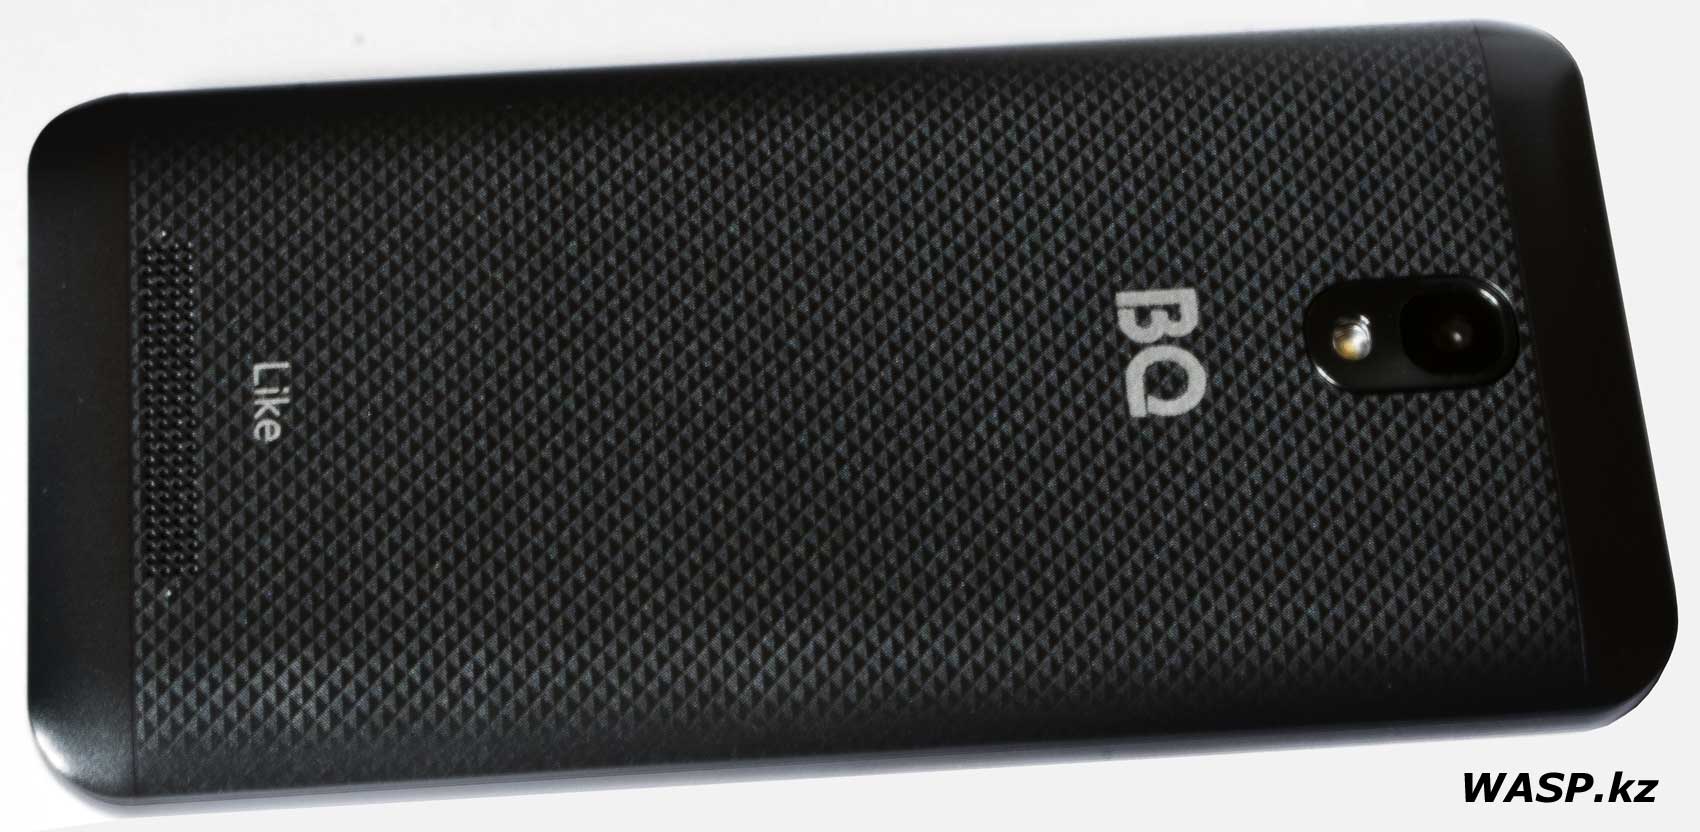 BQ 5047L Like смартфон дешевый с Android 10 Go Edition